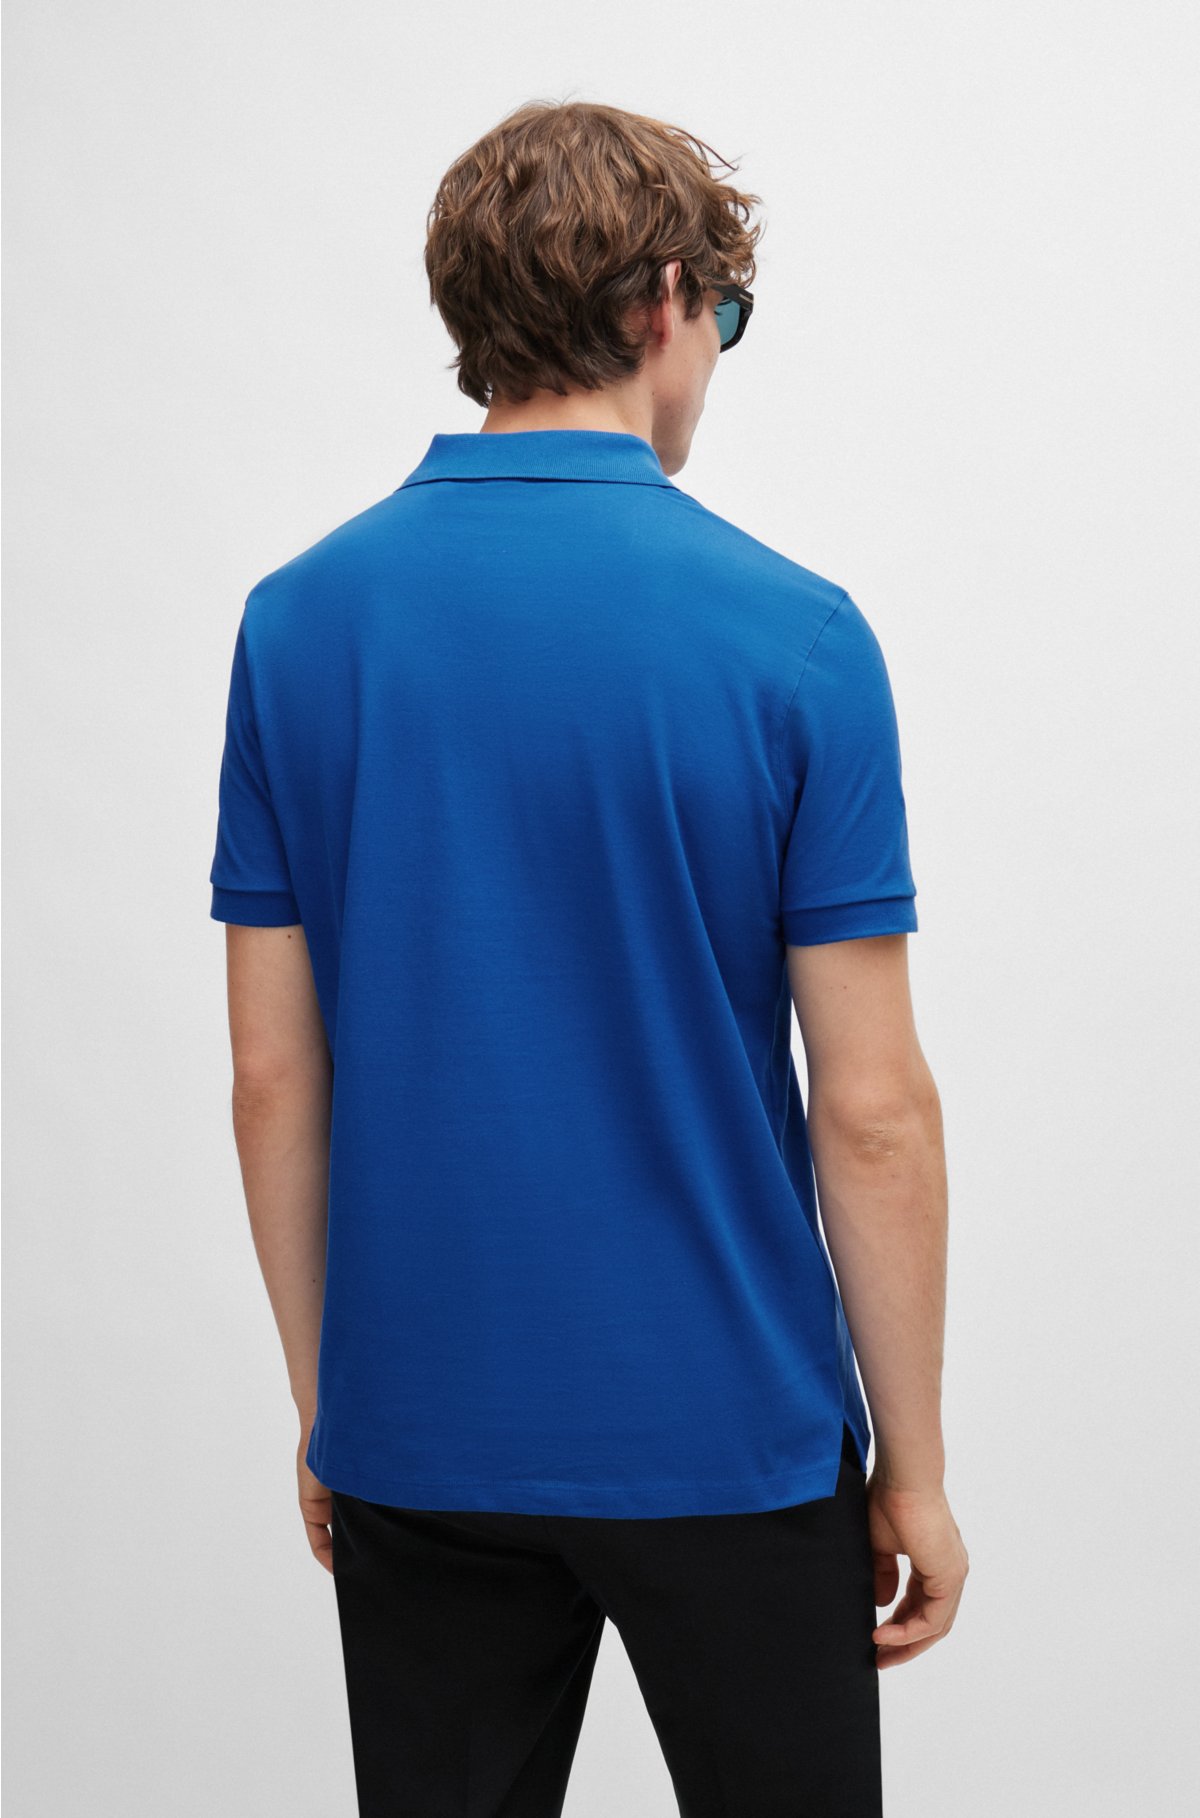 Sportswear Shirt - Tonal Blues